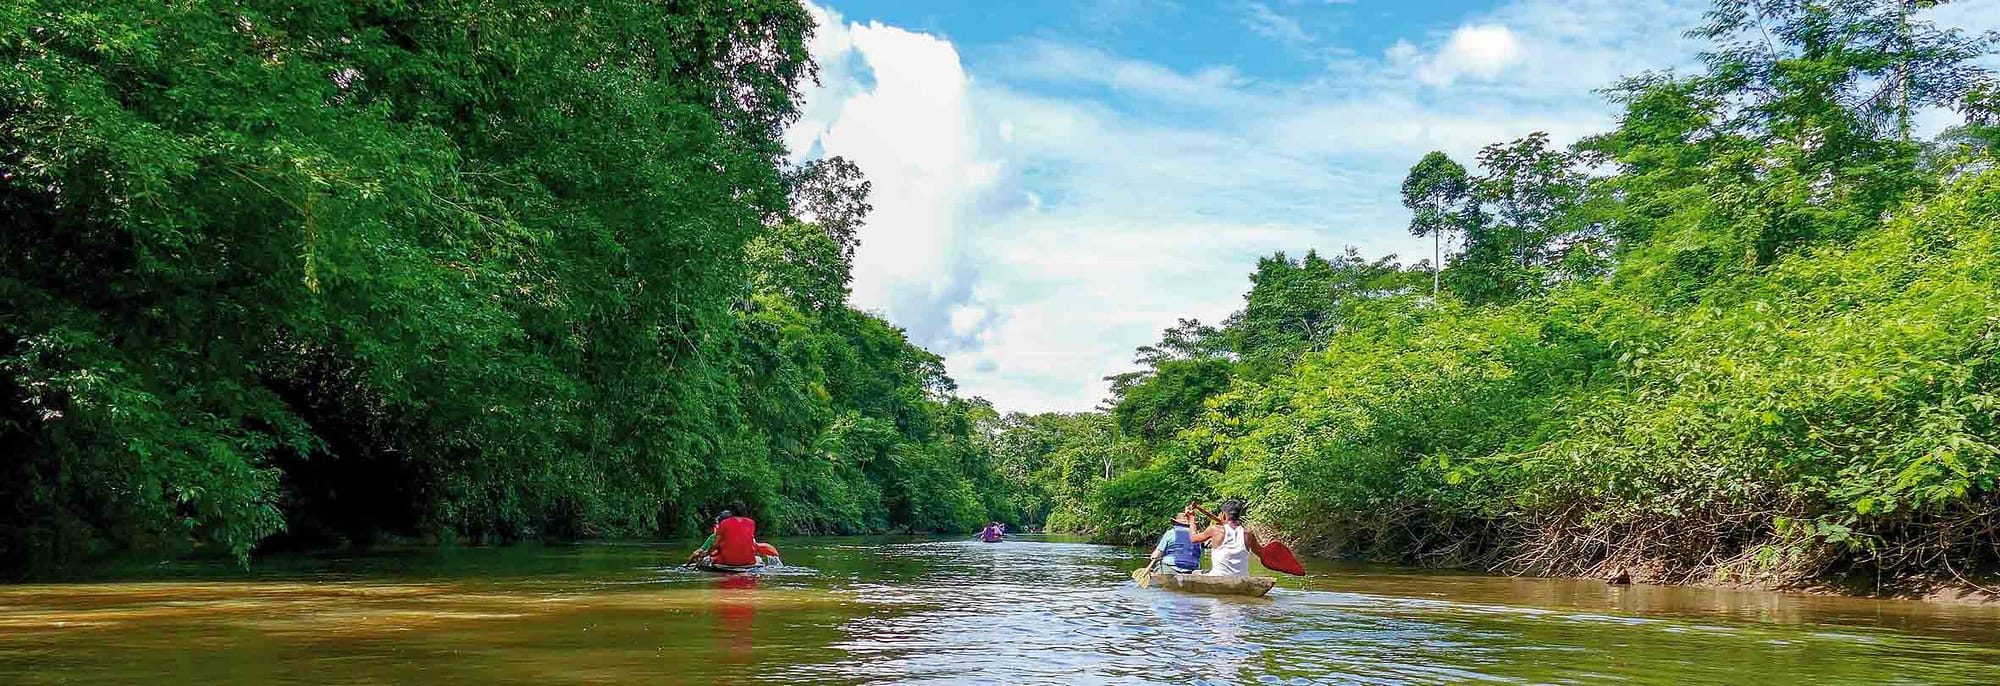 Urwald-Exkursion mit dem Kanu, Ecuador